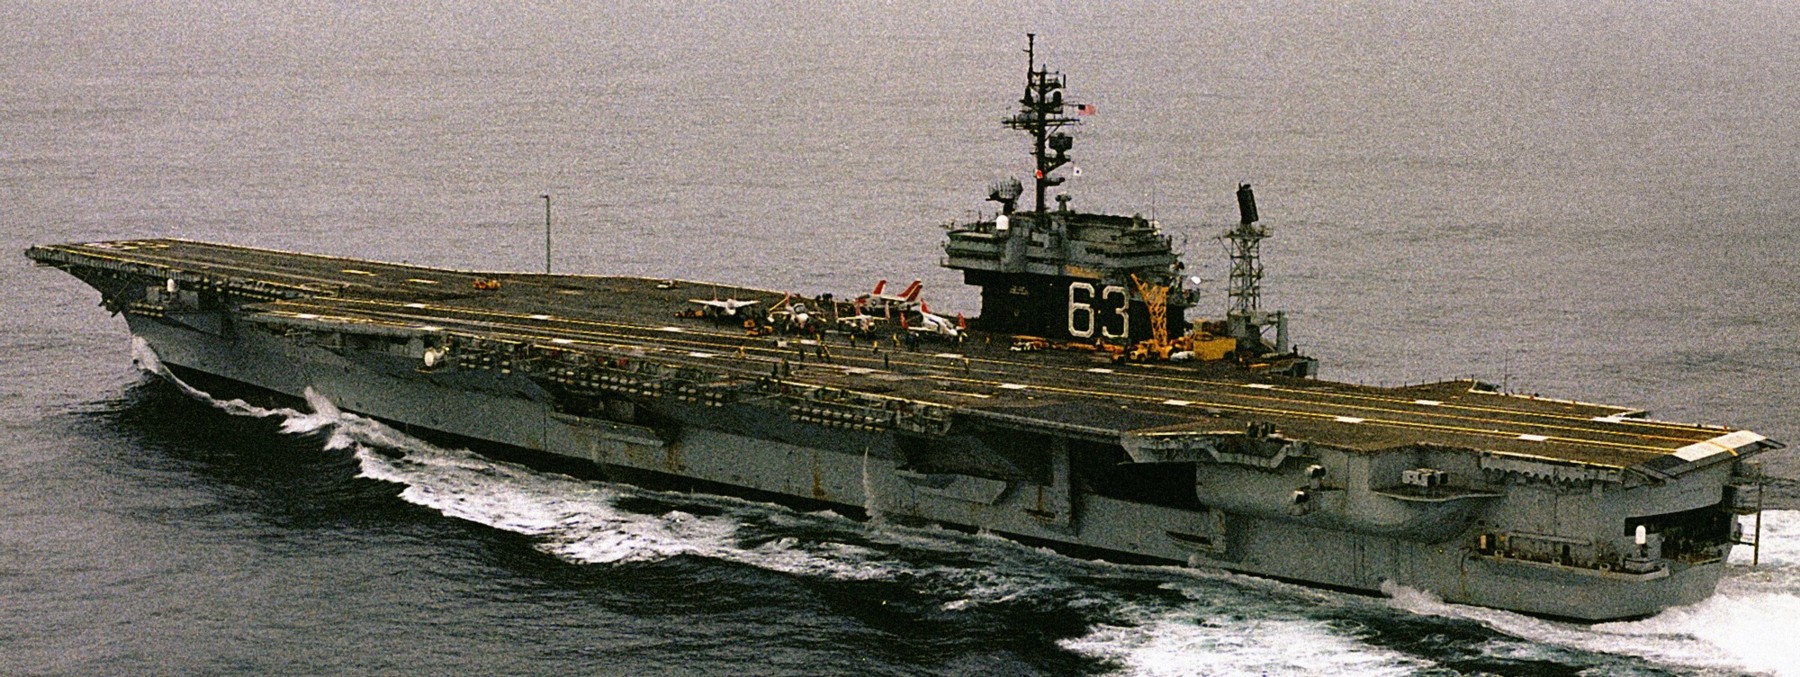 cv-63 uss kitty hawk aircraft carrier 326